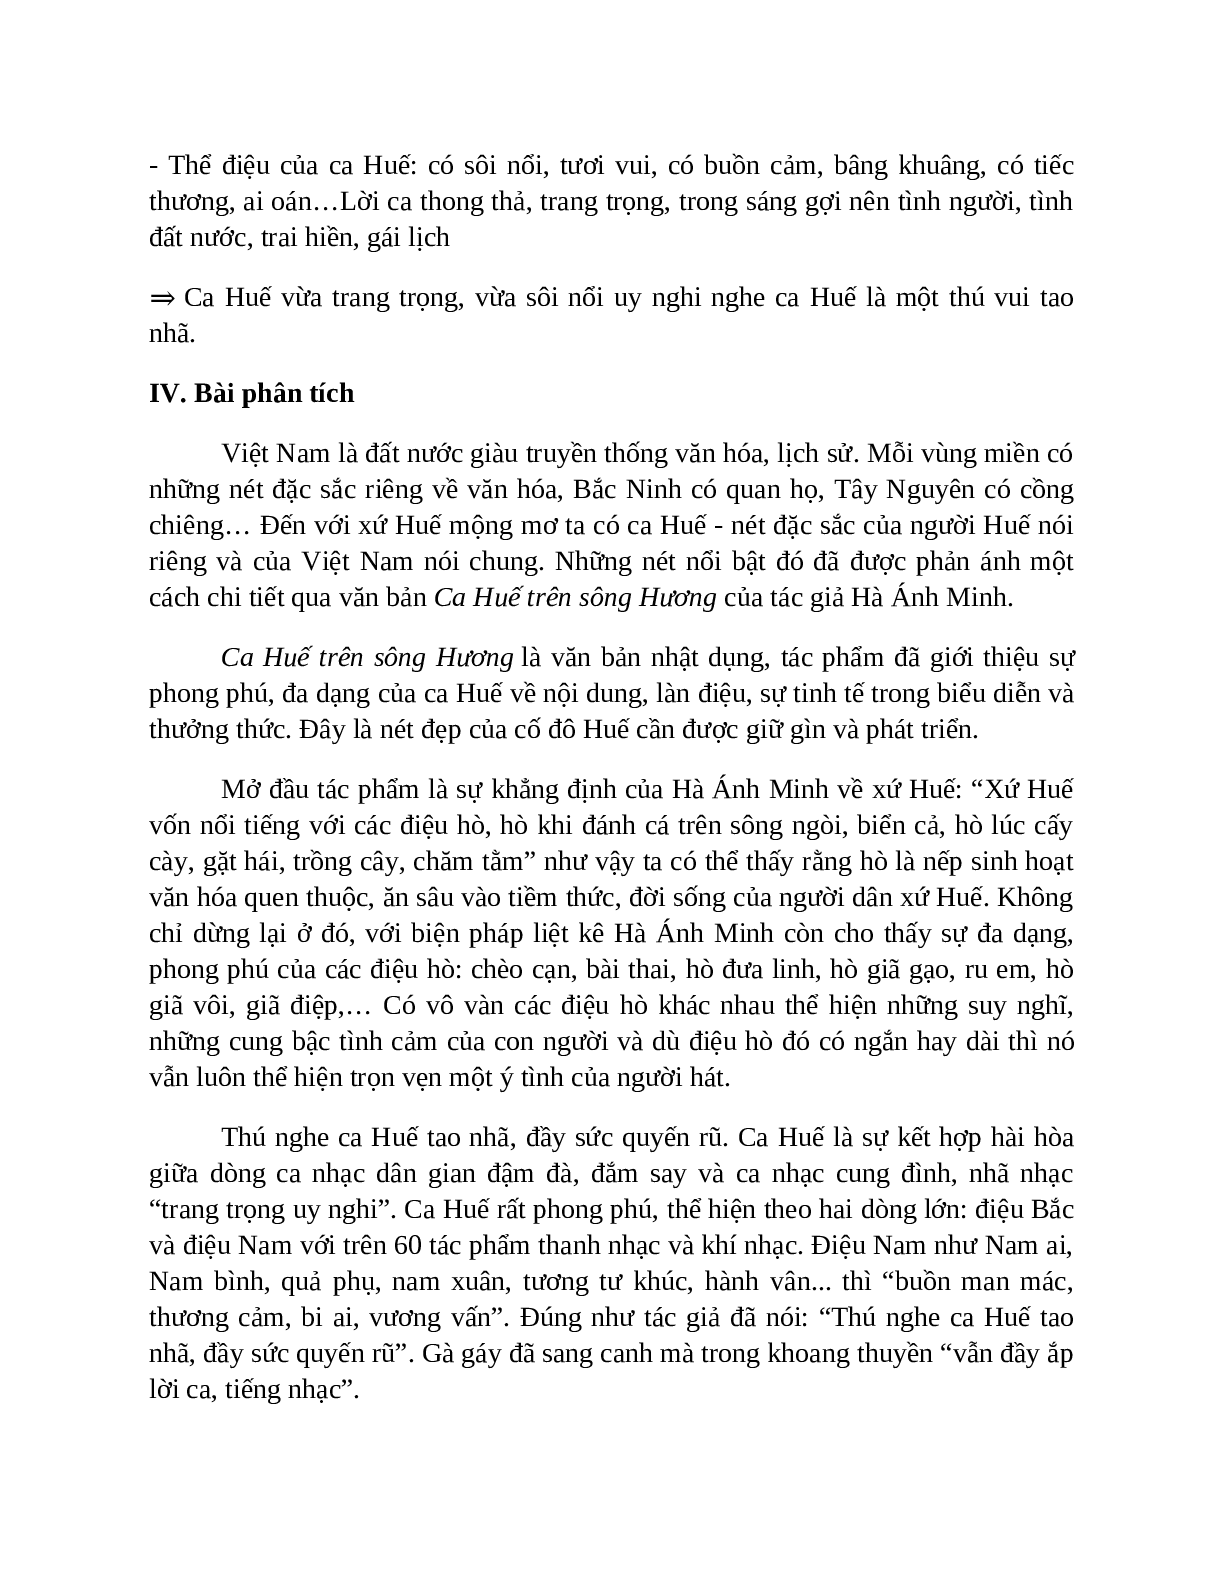 Sơ đồ tư duy bài Ca Huế trên sông Hương dễ nhớ, ngắn nhất - Ngữ văn lớp 7 (trang 4)